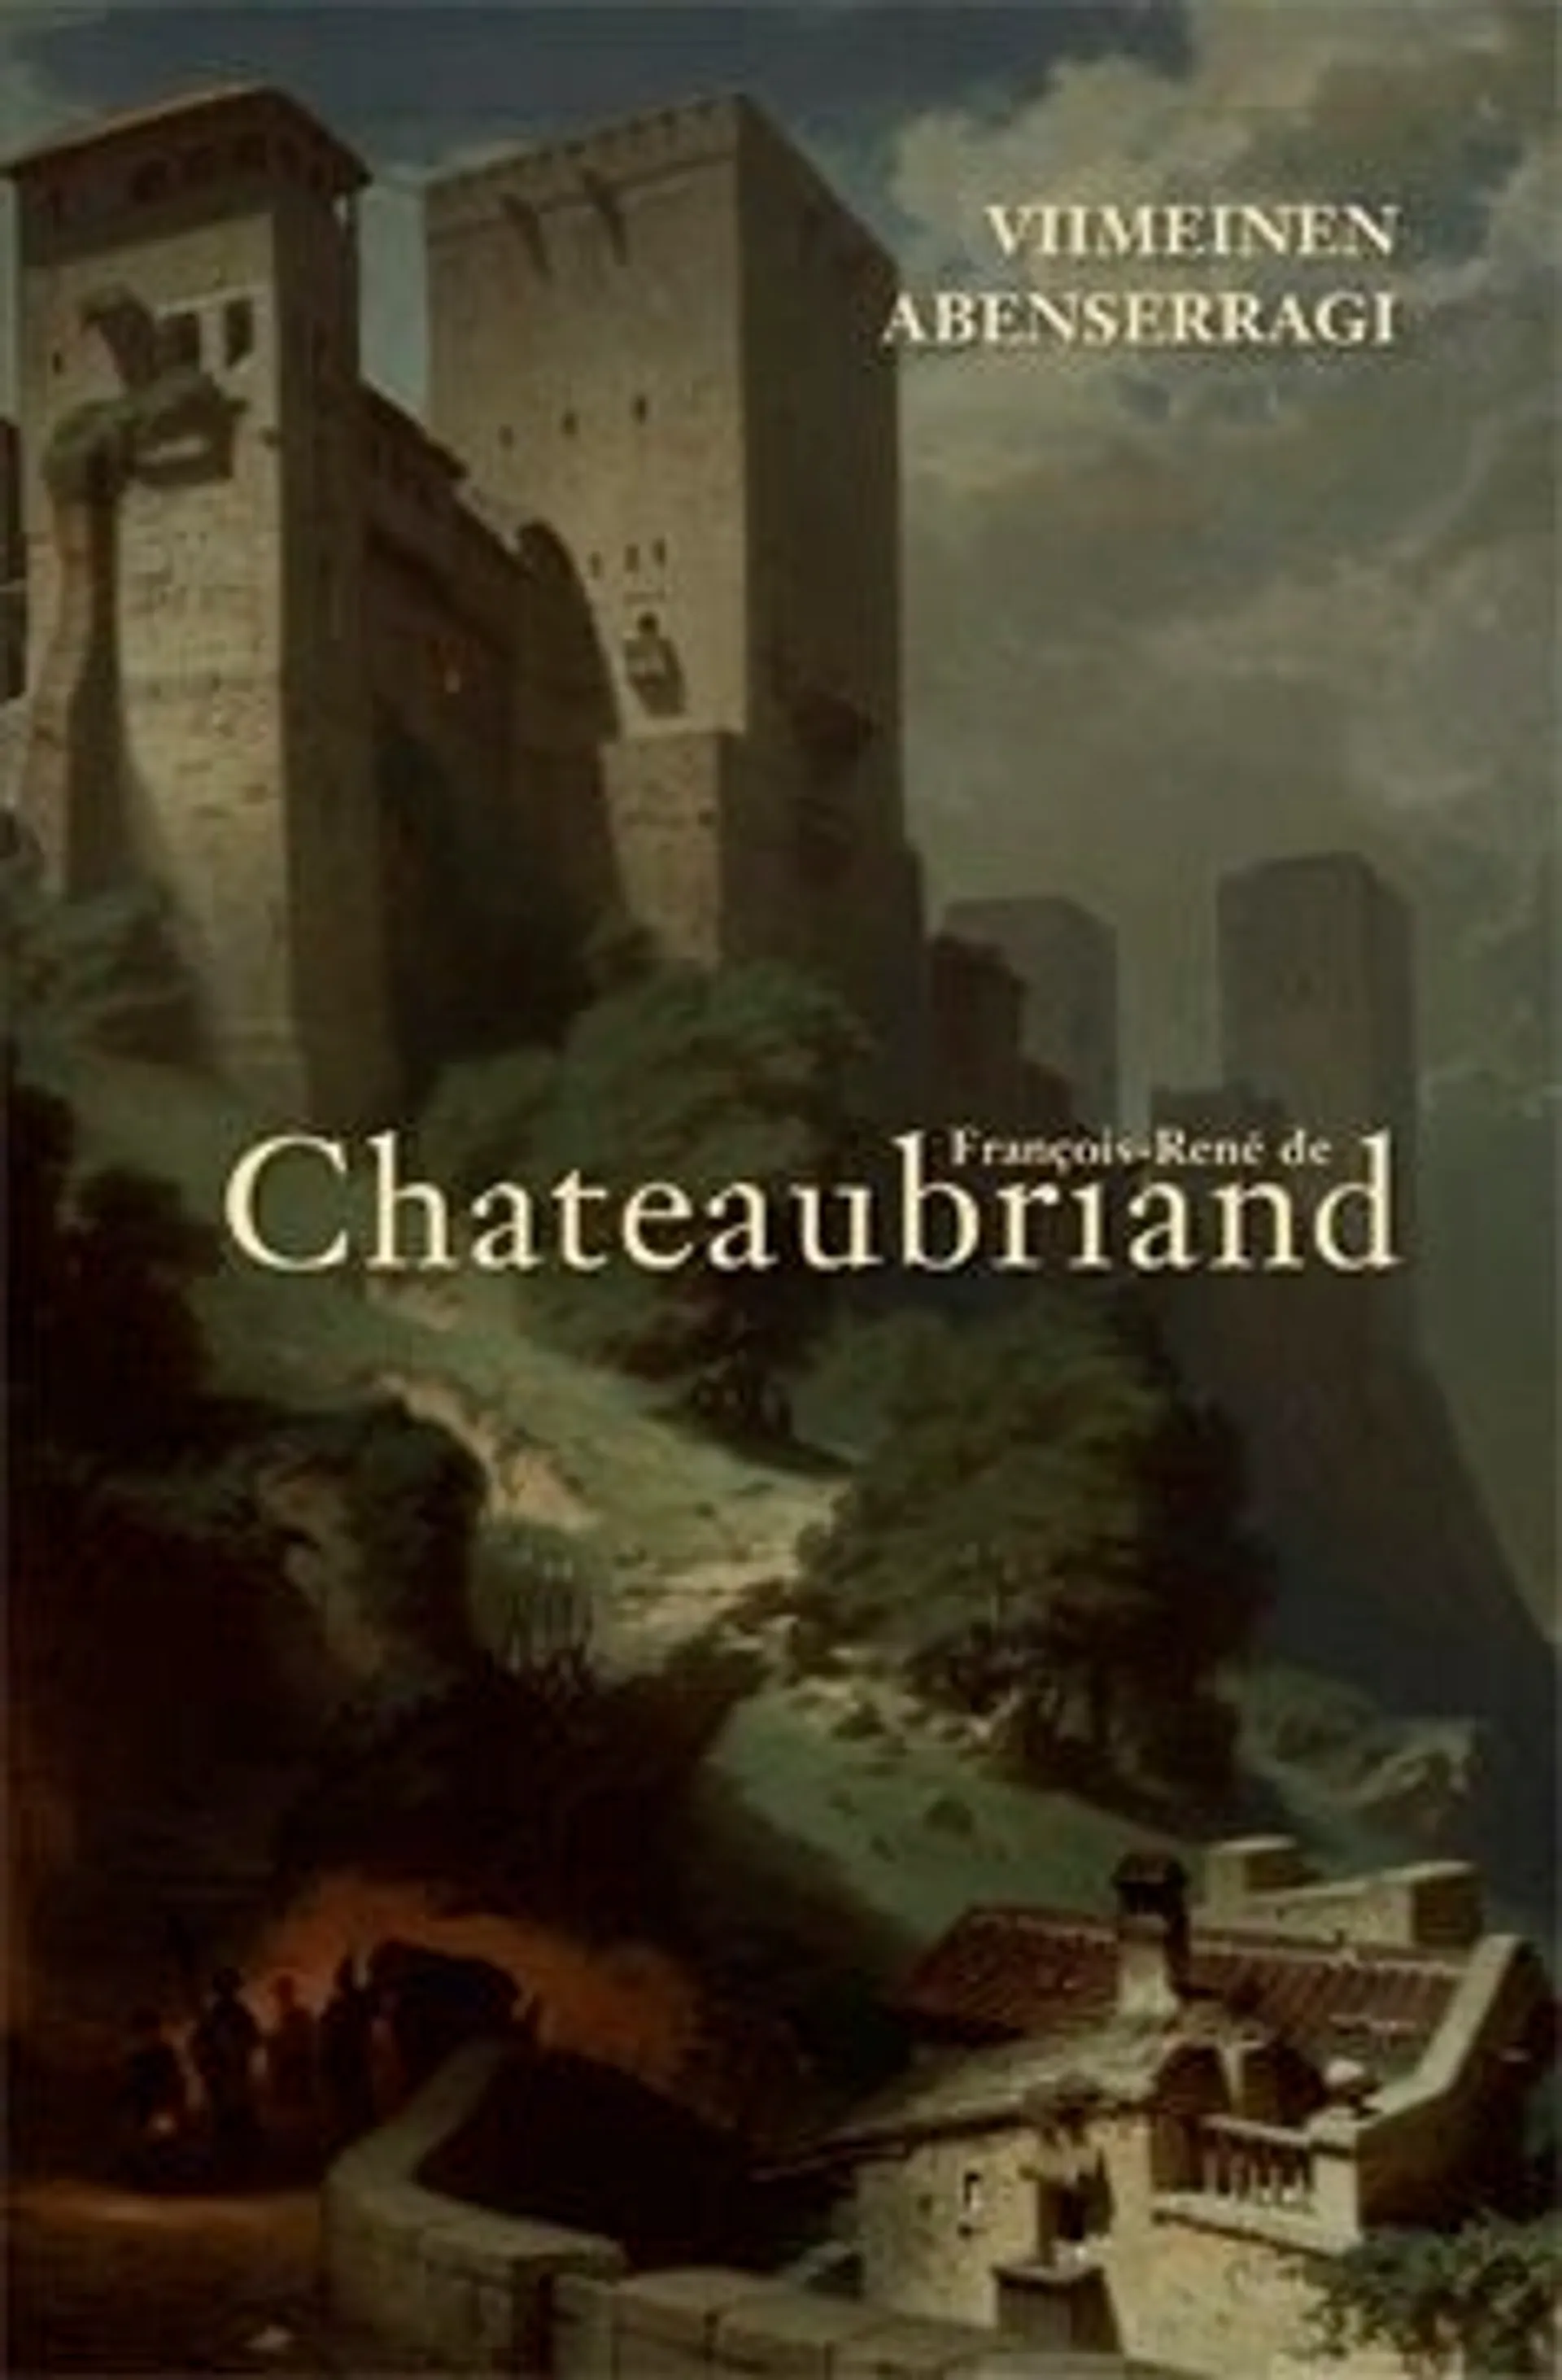 Chateubriand, Viimeinen Abenserragi